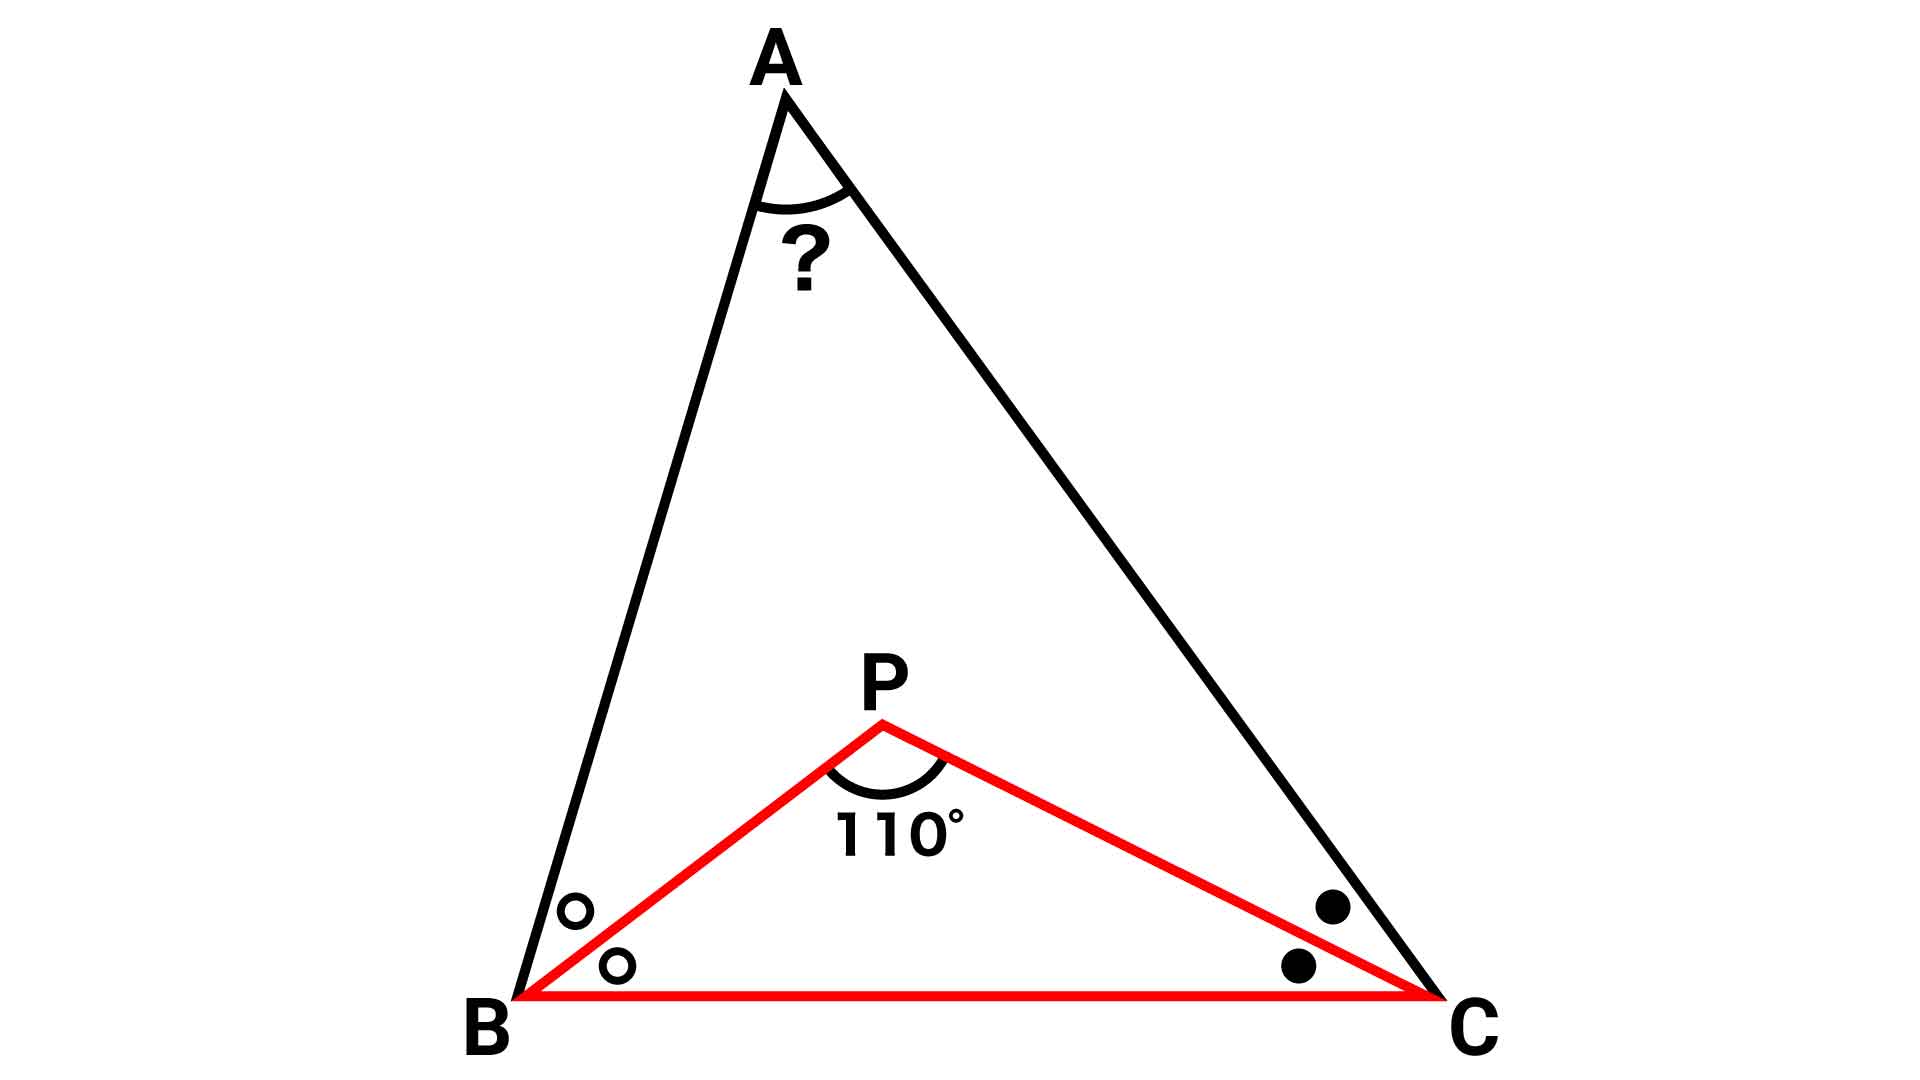 小学5年生で解ける 三角形の角度 の問題 あなたは解けますか